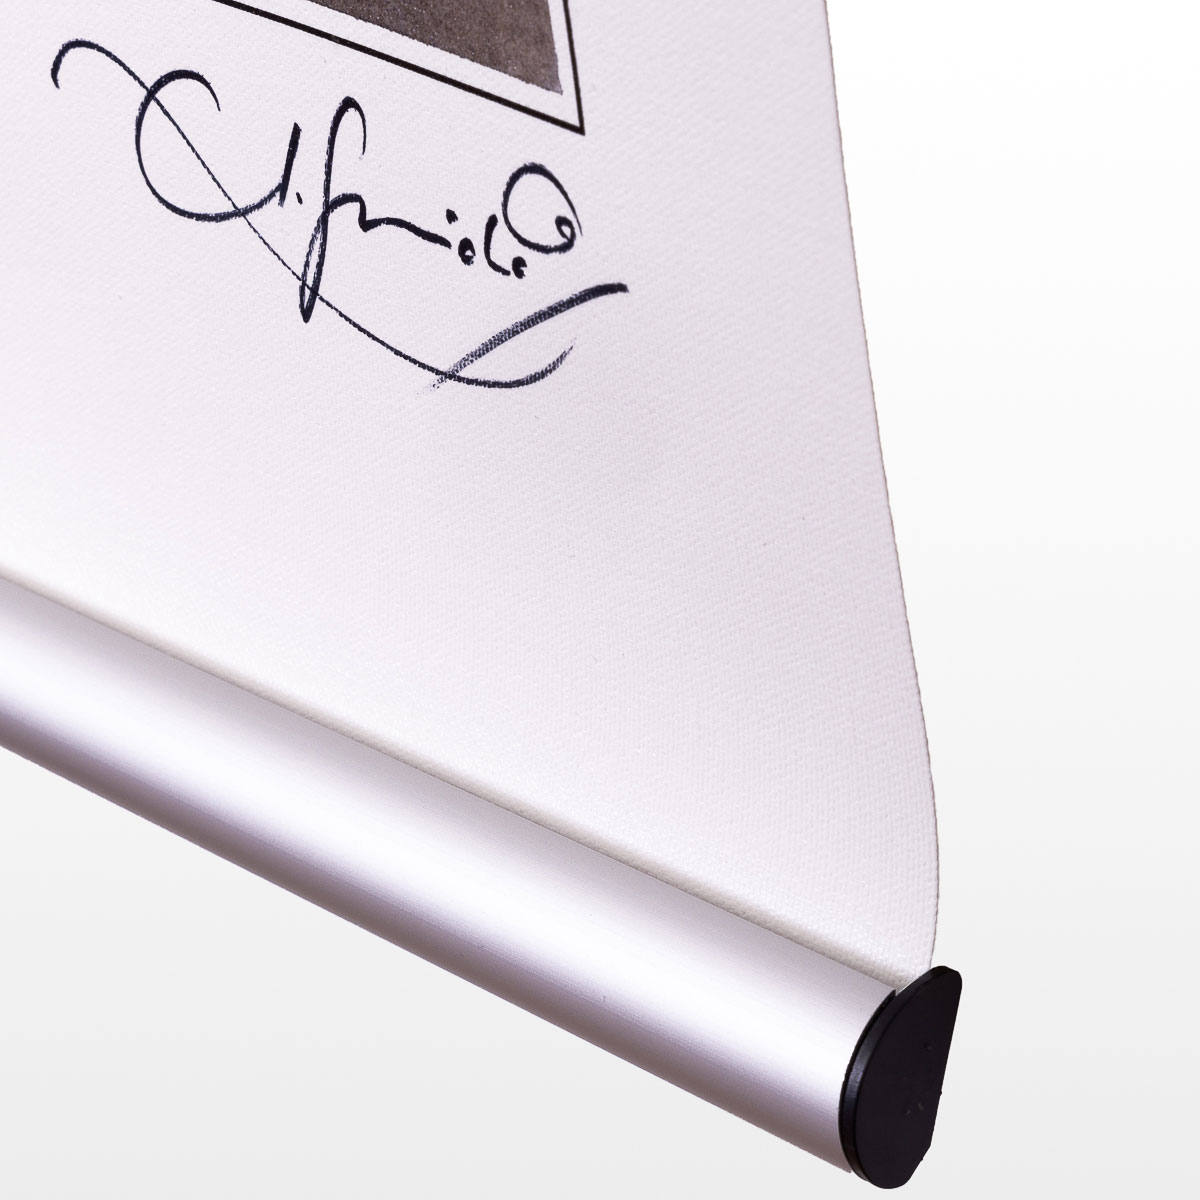 Stampa pigmentata su tela firmata da Guarnido: Minute Waltz - Dettaglio del sistema di appeso e firma di Guarnido